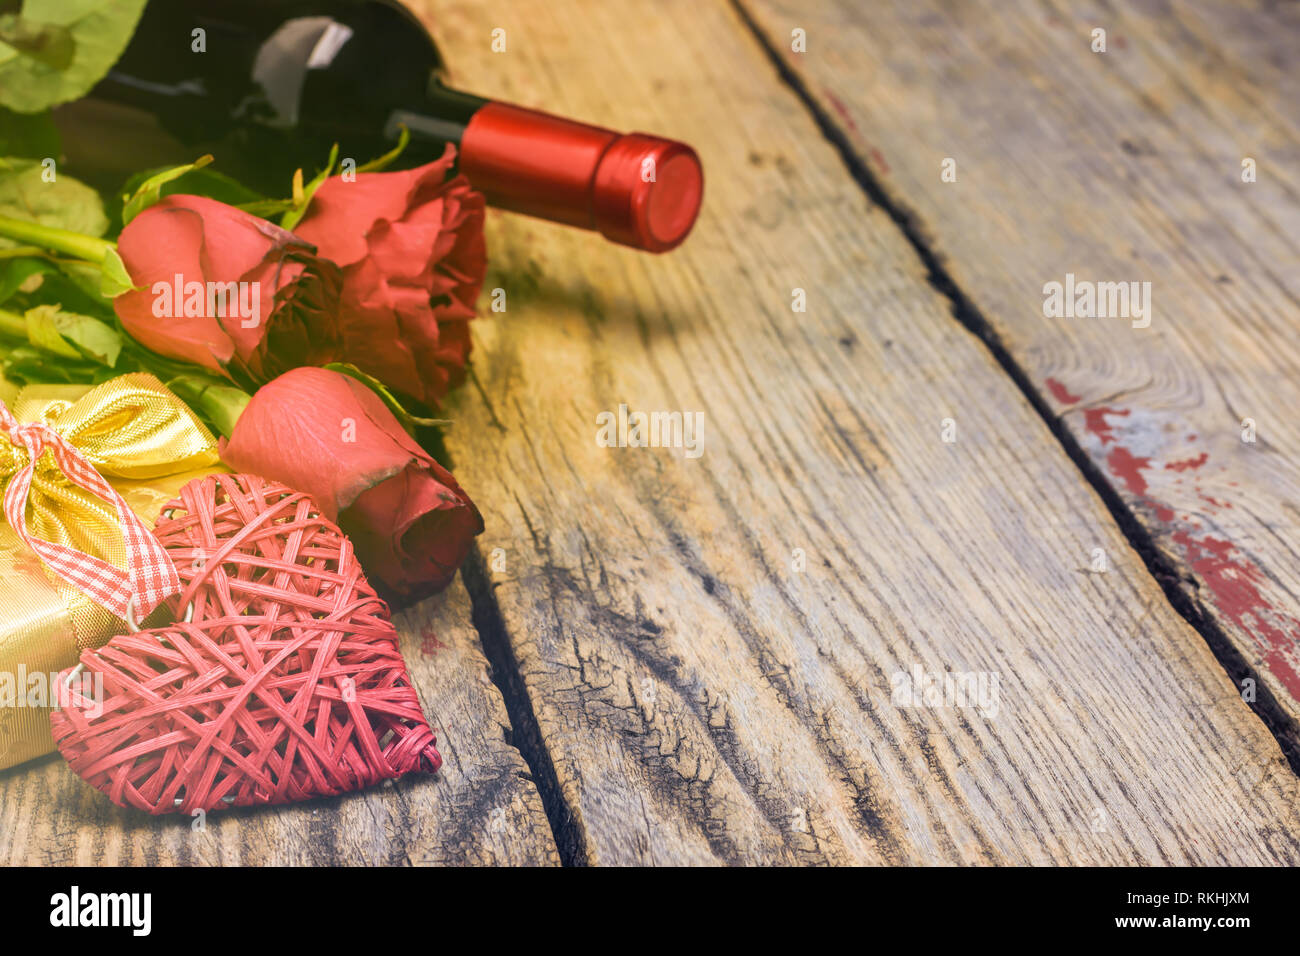 Il giorno di San Valentino del concetto. Cuore di vimini, red rose, confezione regalo e una bottiglia di vino in un ambiente rustico in legno con blackboard copia spazio per il testo. Messa a fuoco selettiva. Foto Stock